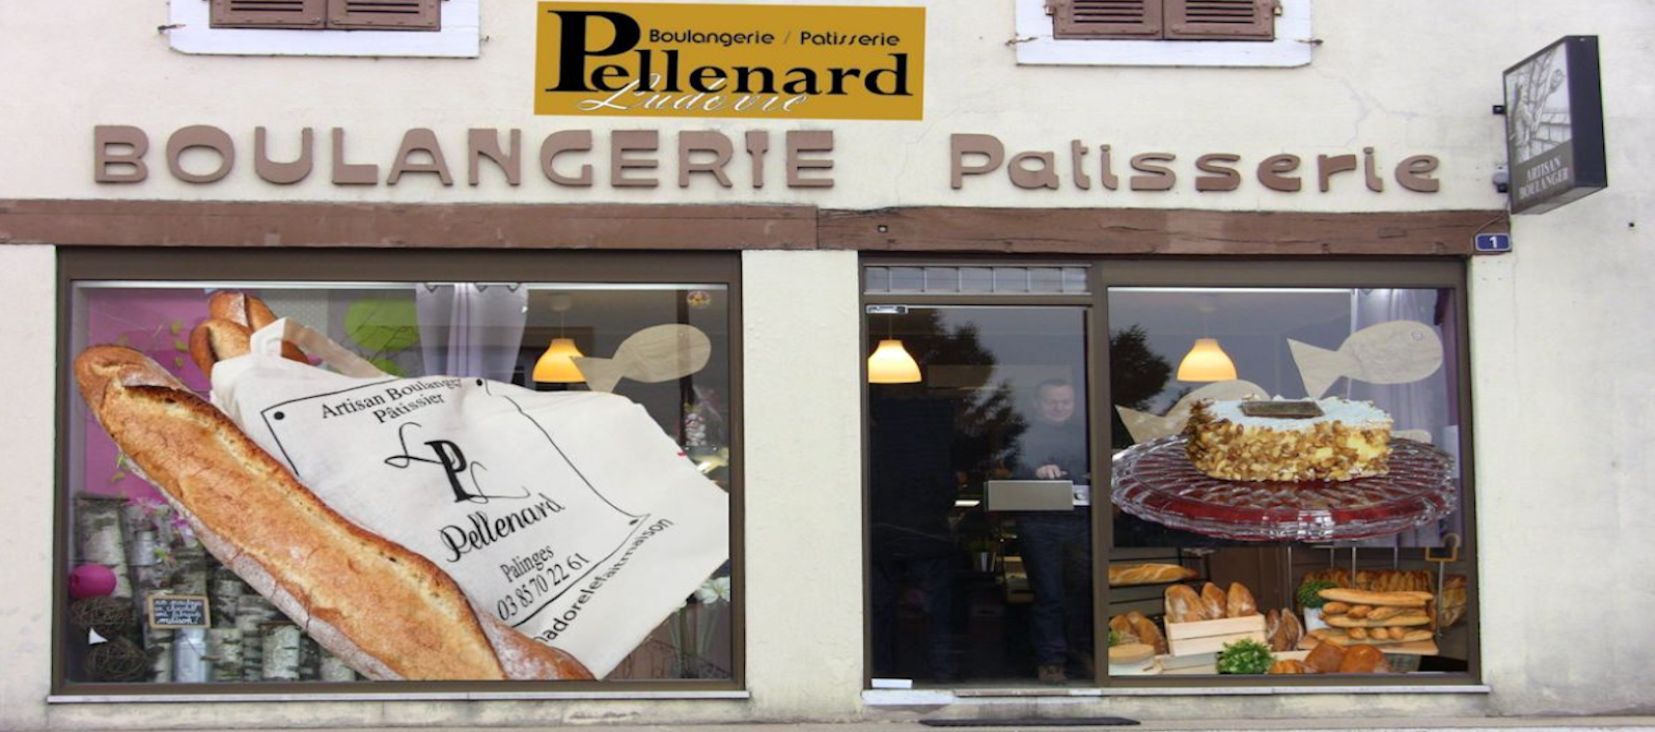 Boulangerie Pellenard alerte covid19